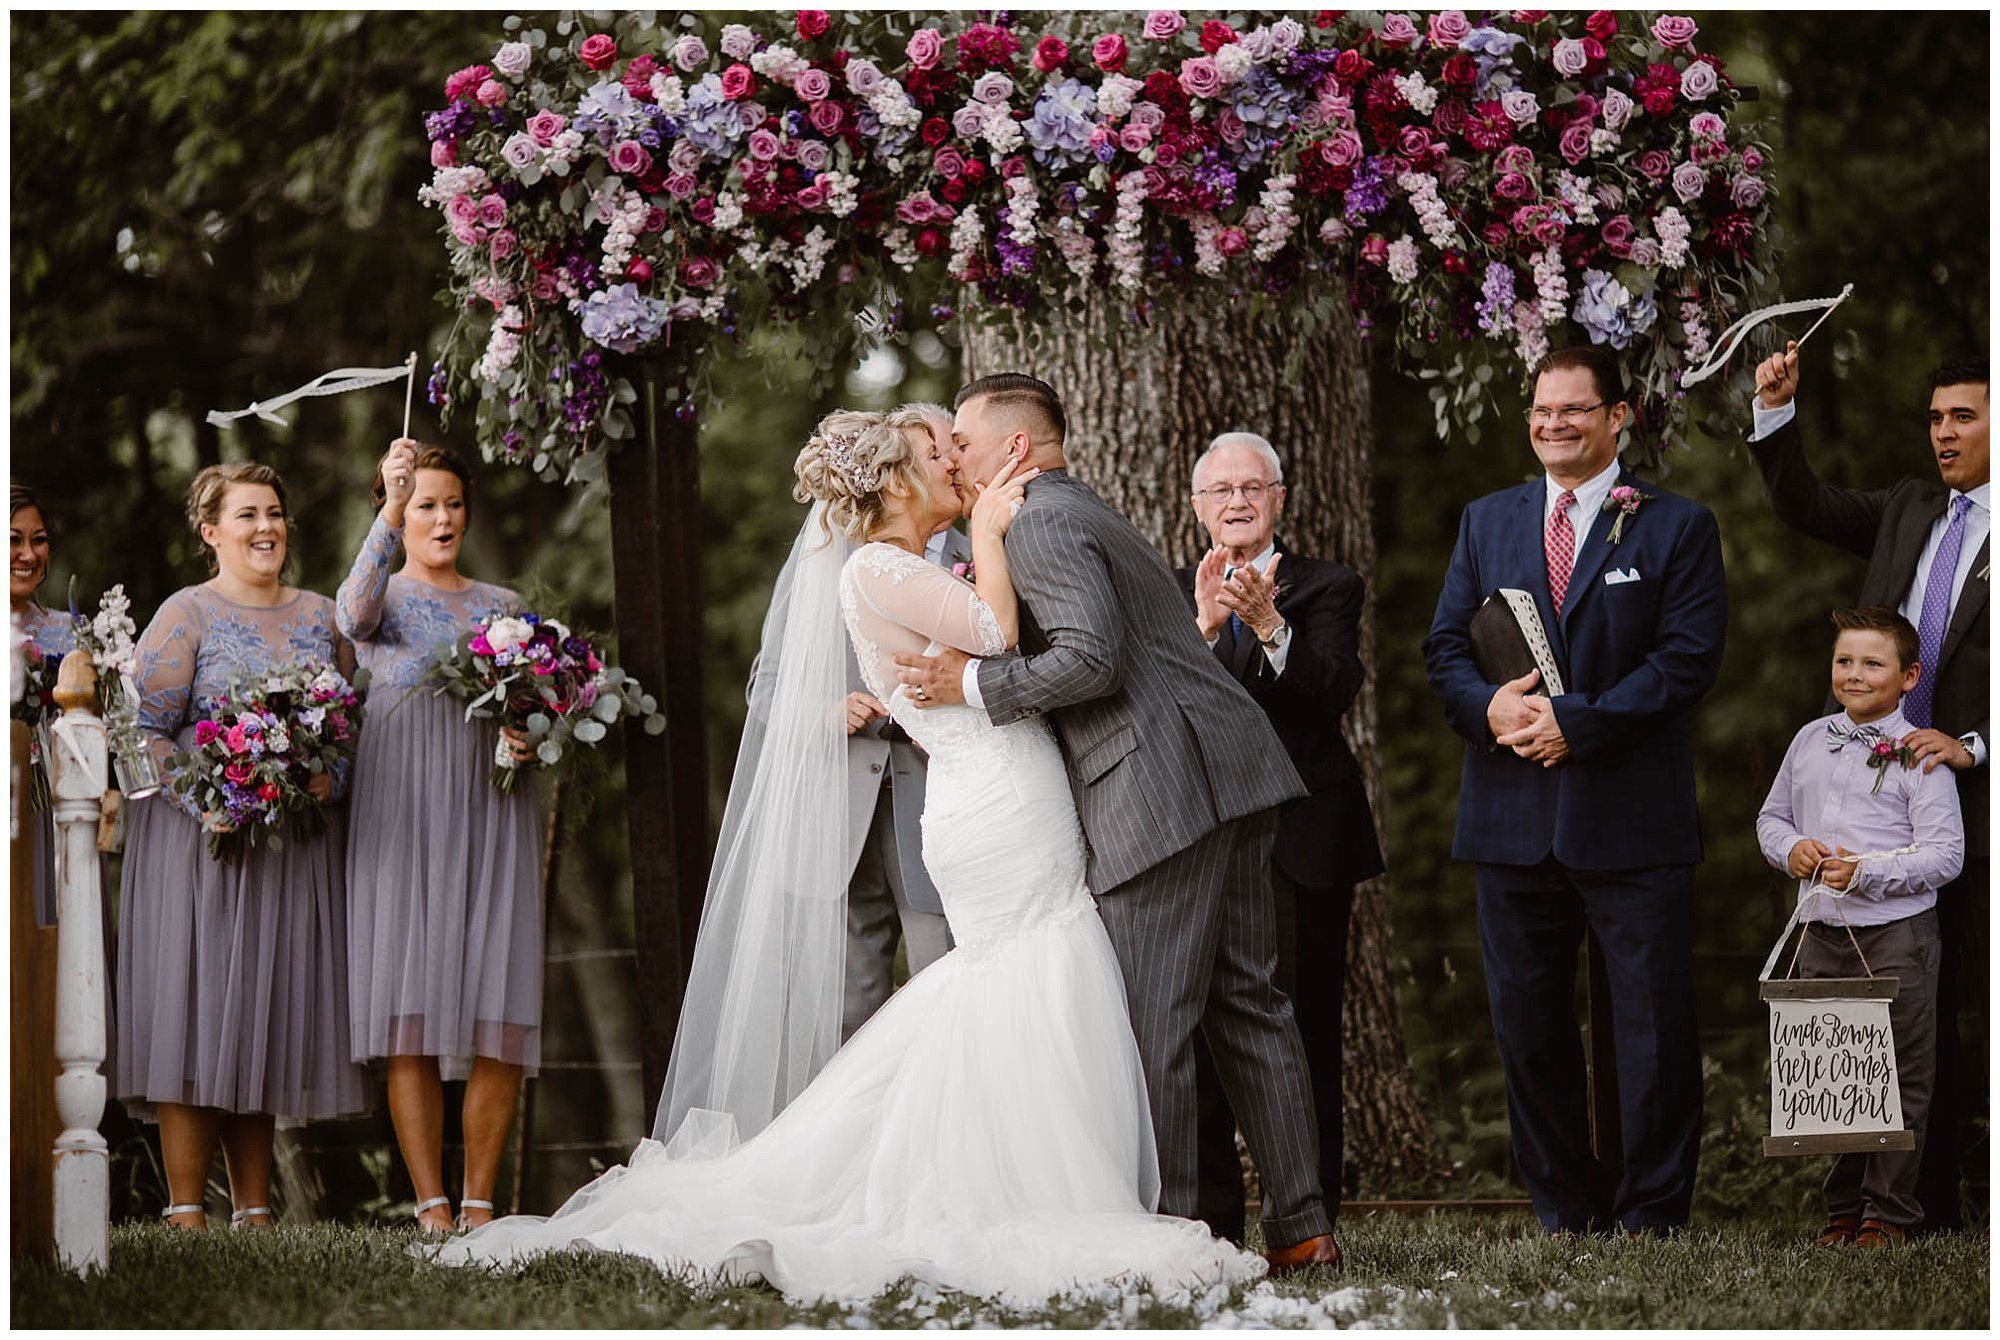 First kiss at wedding at Heartland Meadows